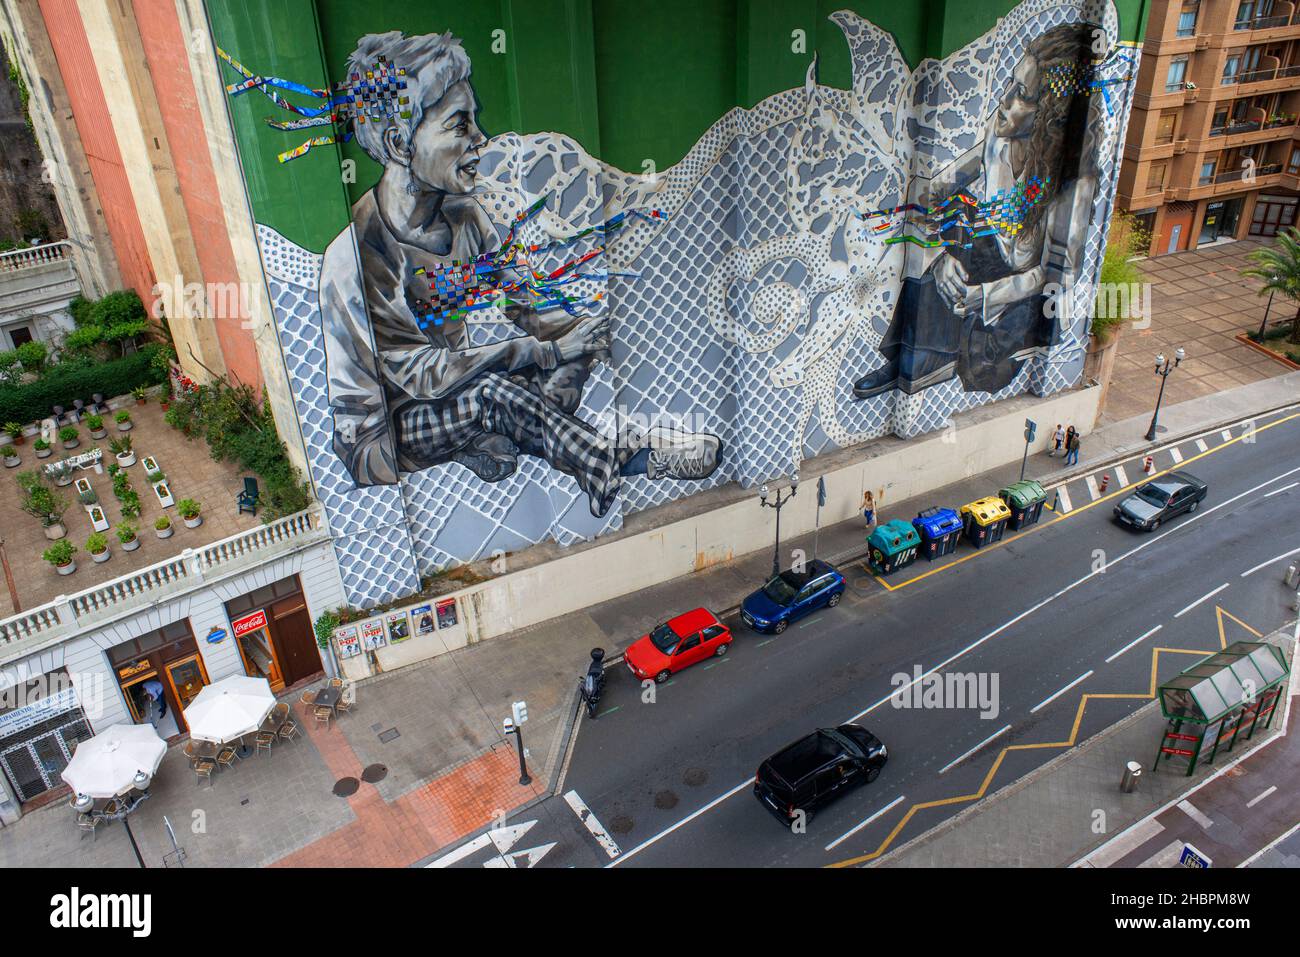 Street art mural à grande échelle sur le côté du bâtiment, Bilbao, Pays Basque, Espagne Banque D'Images